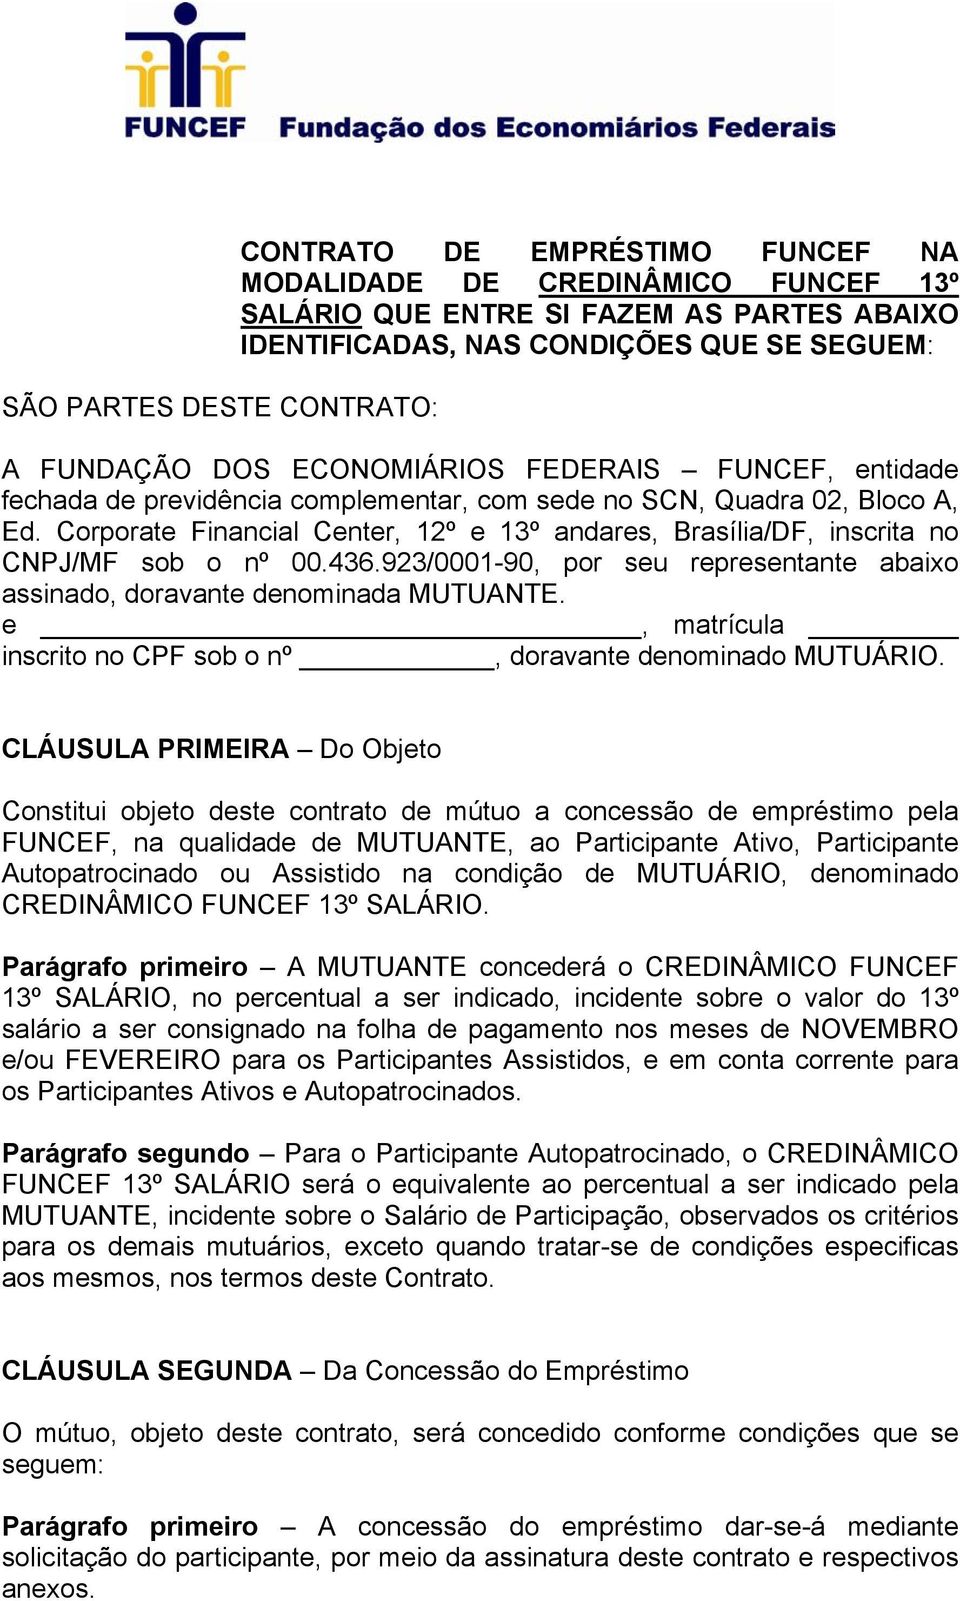 Corporate Financial Center, 12º e 13º andares, Brasília/DF, inscrita no CNPJ/MF sob o nº 00.436.923/0001-90, por seu representante abaixo assinado, doravante denominada MUTUANTE.